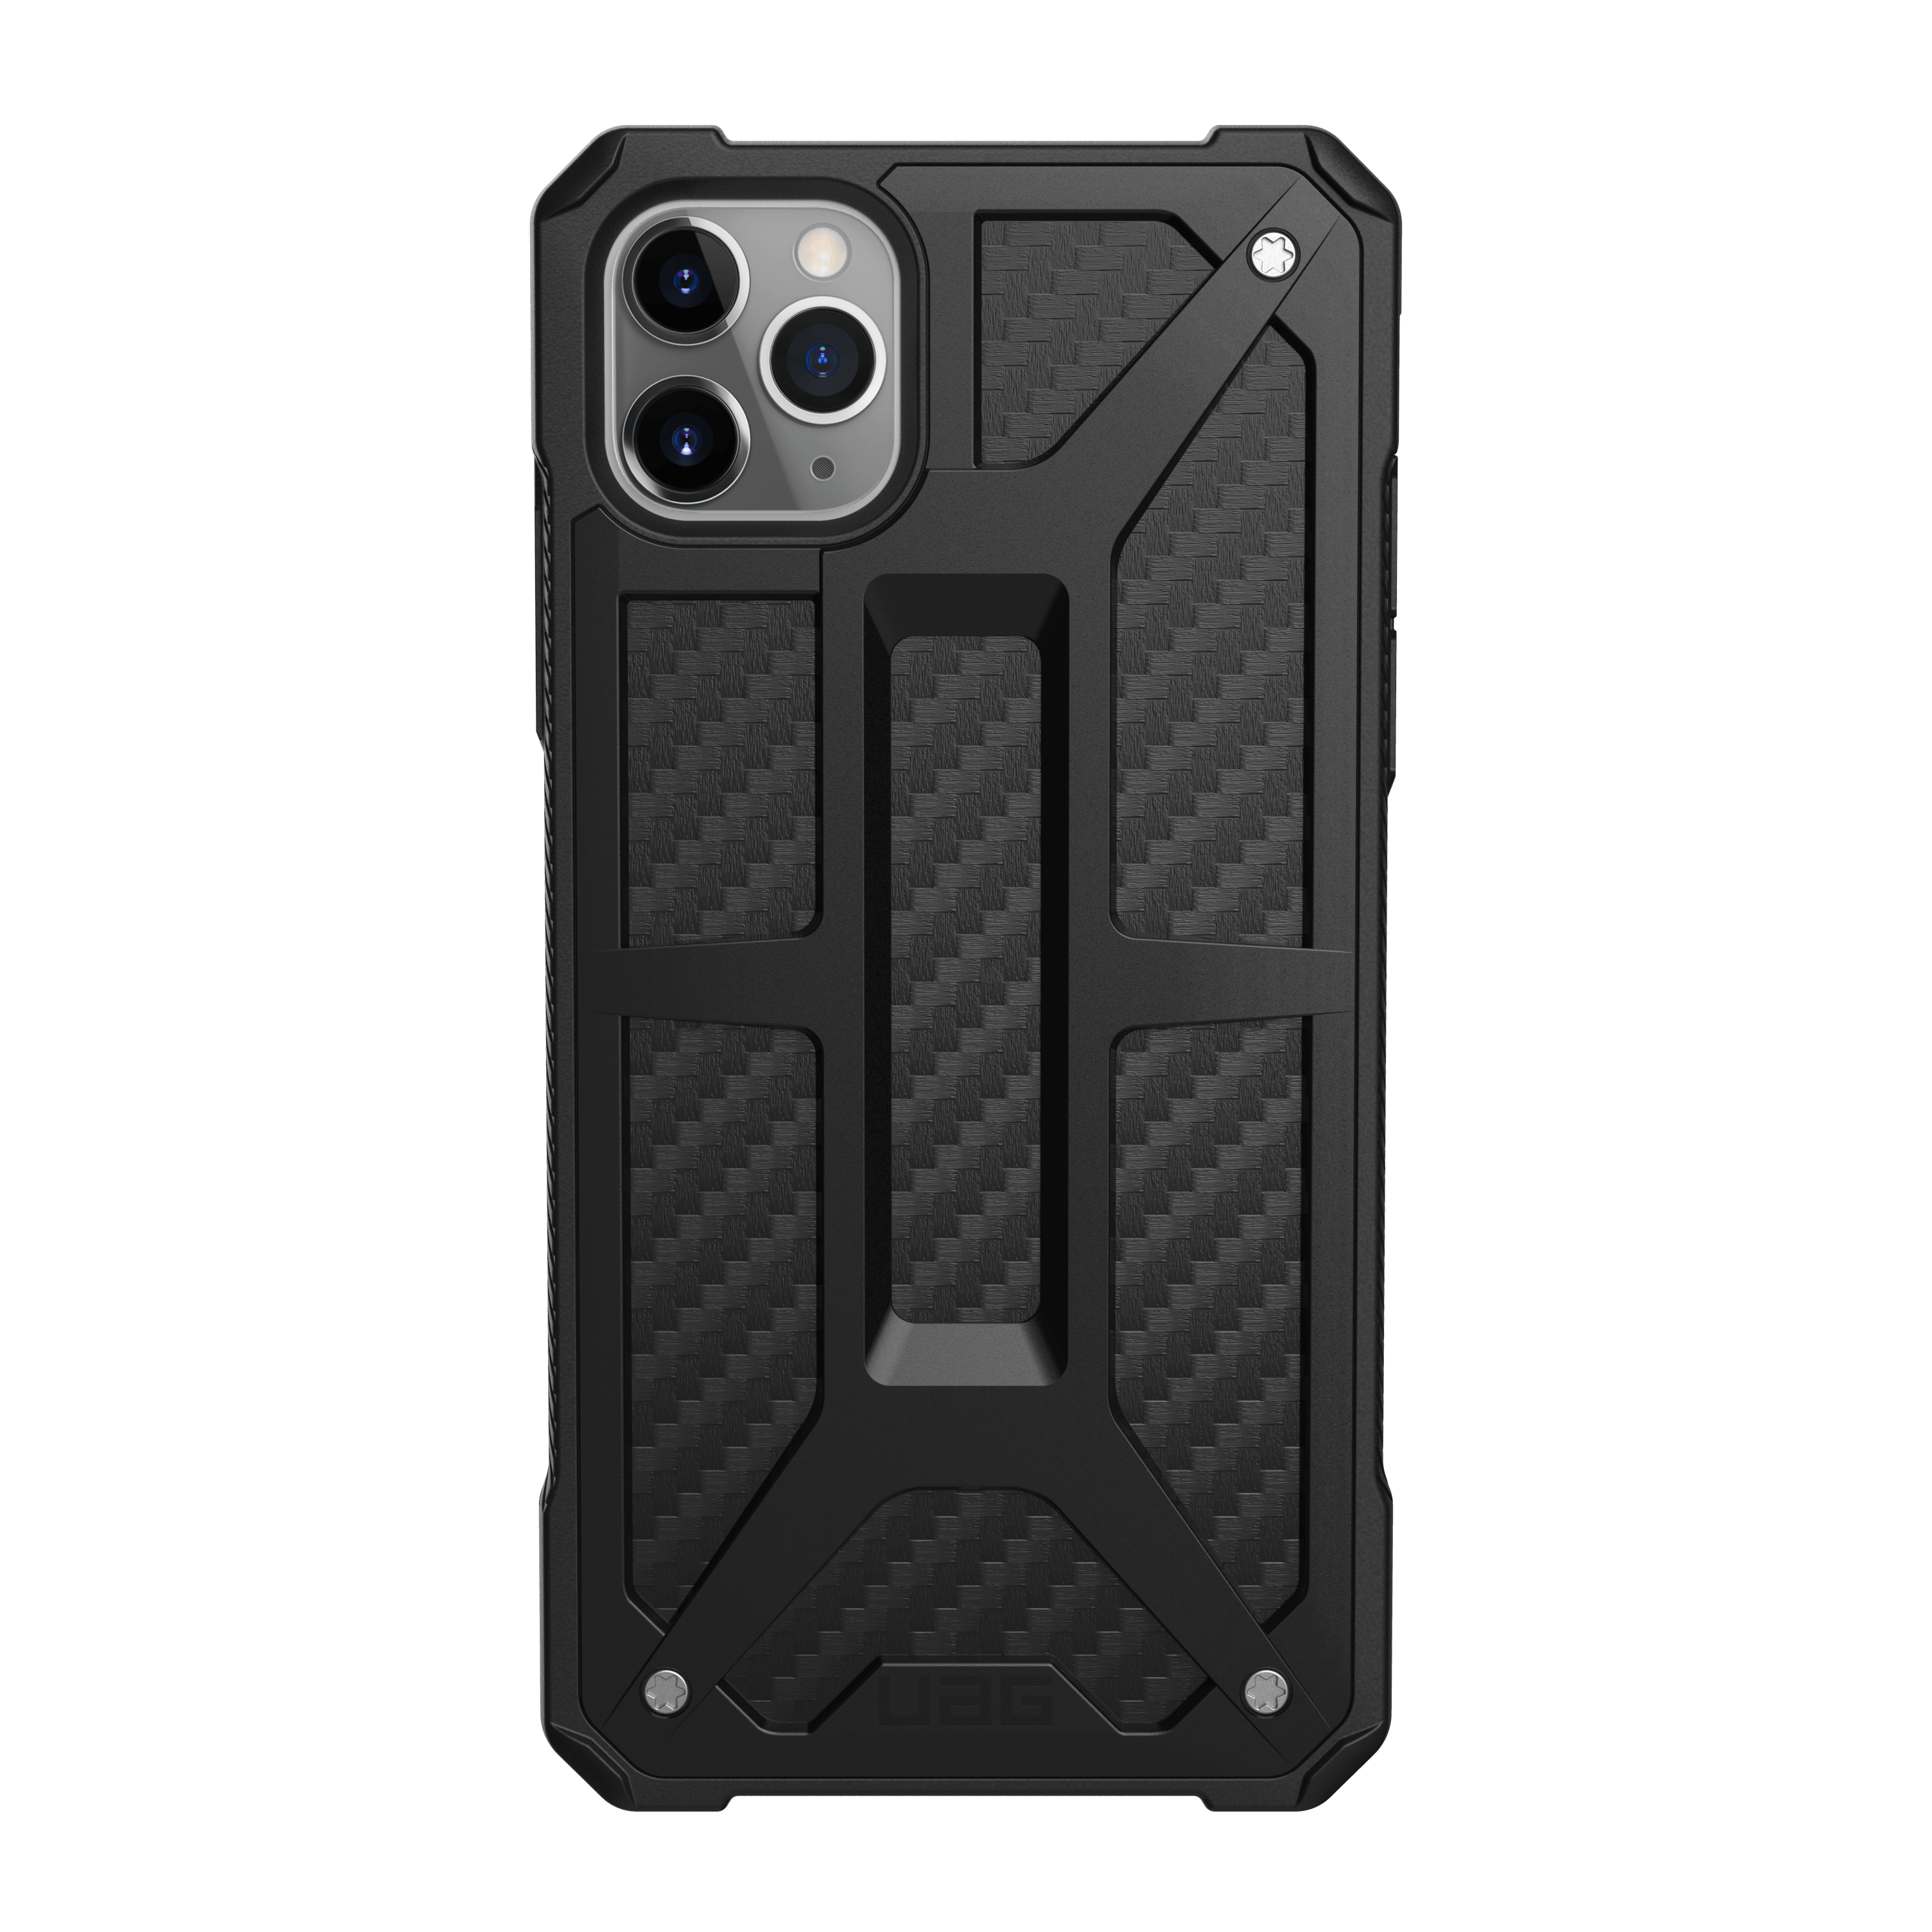 UAG Case iPhone 11 Pro Max